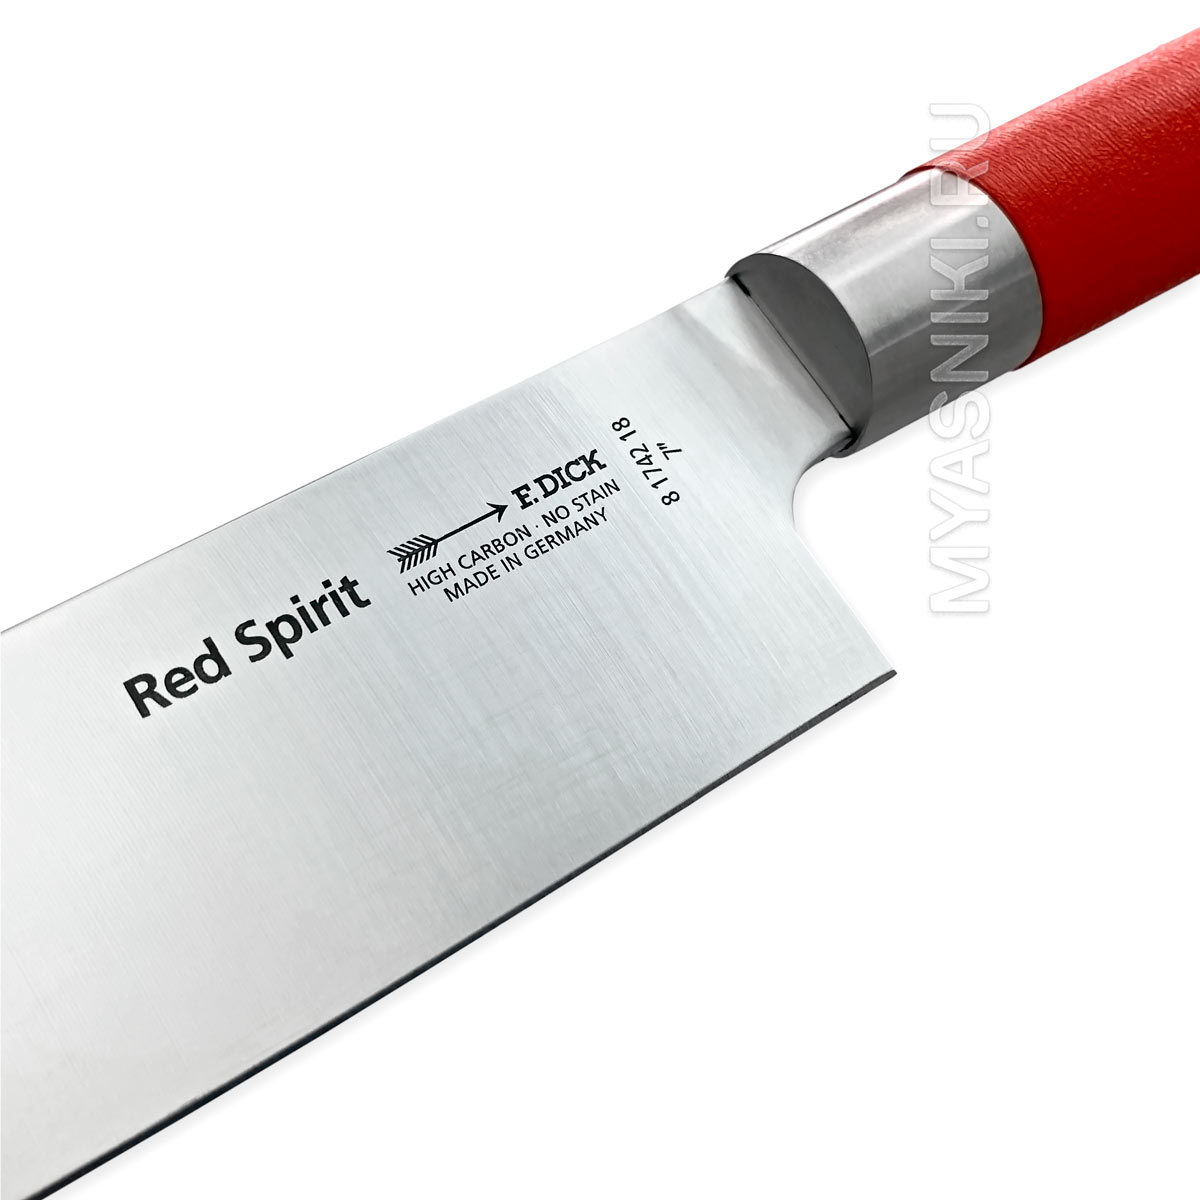 F dick. Сантоку с красной ручкой. Нож f dick Active Cat для чистки овощей 9 см купить.